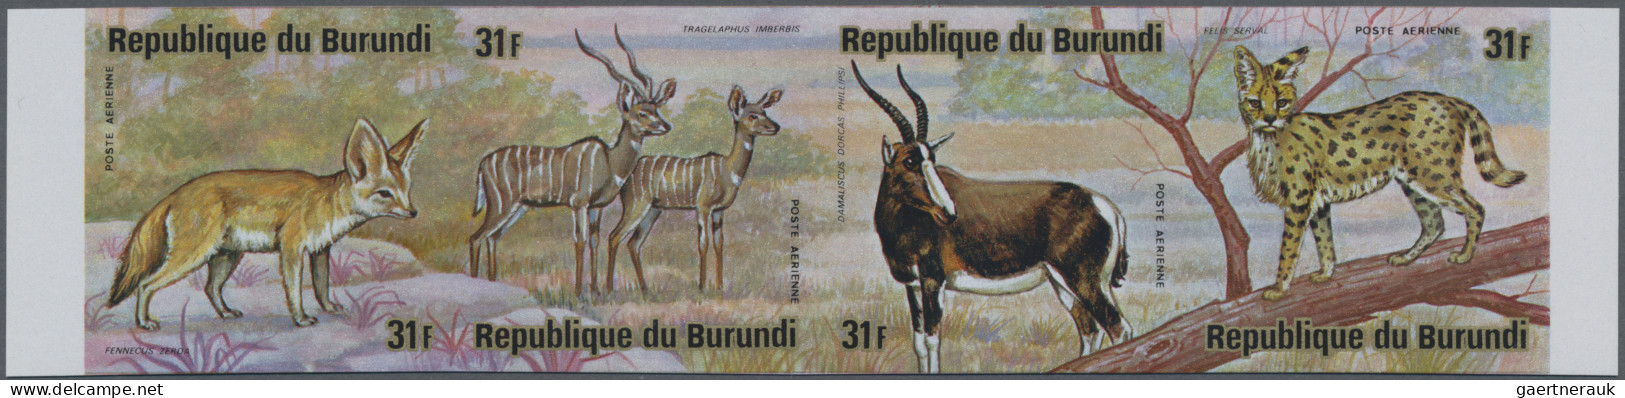 Burundi: 1975: African Animals, 12 Imperforate Mint Se-tenats. (COB 1.500 €). - Unused Stamps